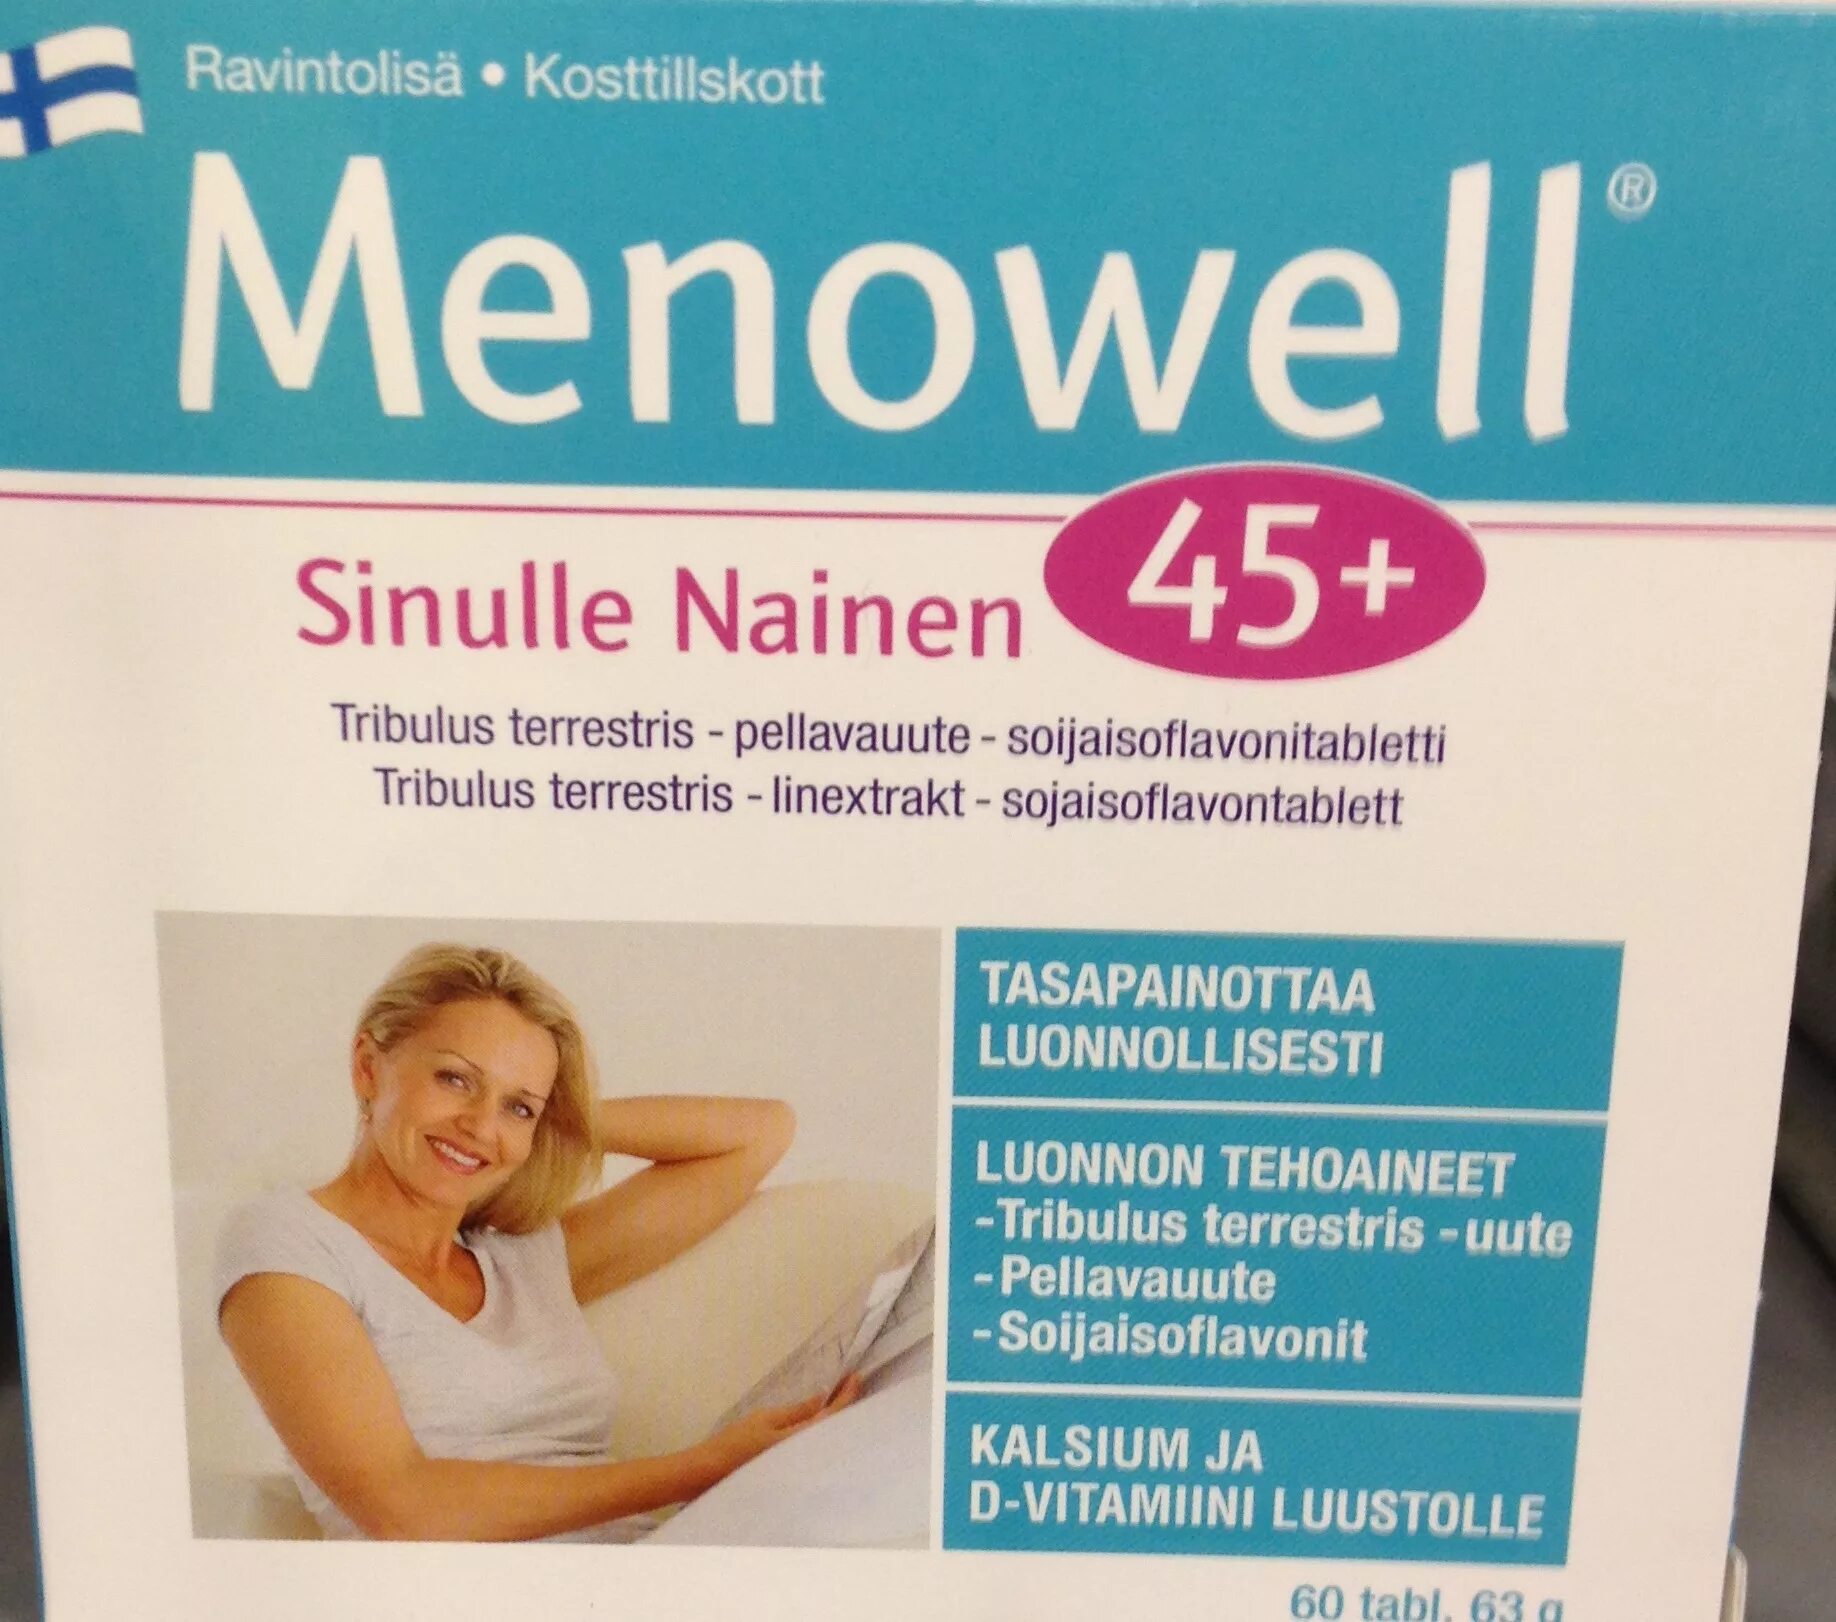 Витамины при менопаузе 50. Витамины Menowell 45+. Менопауза витамины menopause. Витамины из Финляндии 45+. Женские витамины финские.